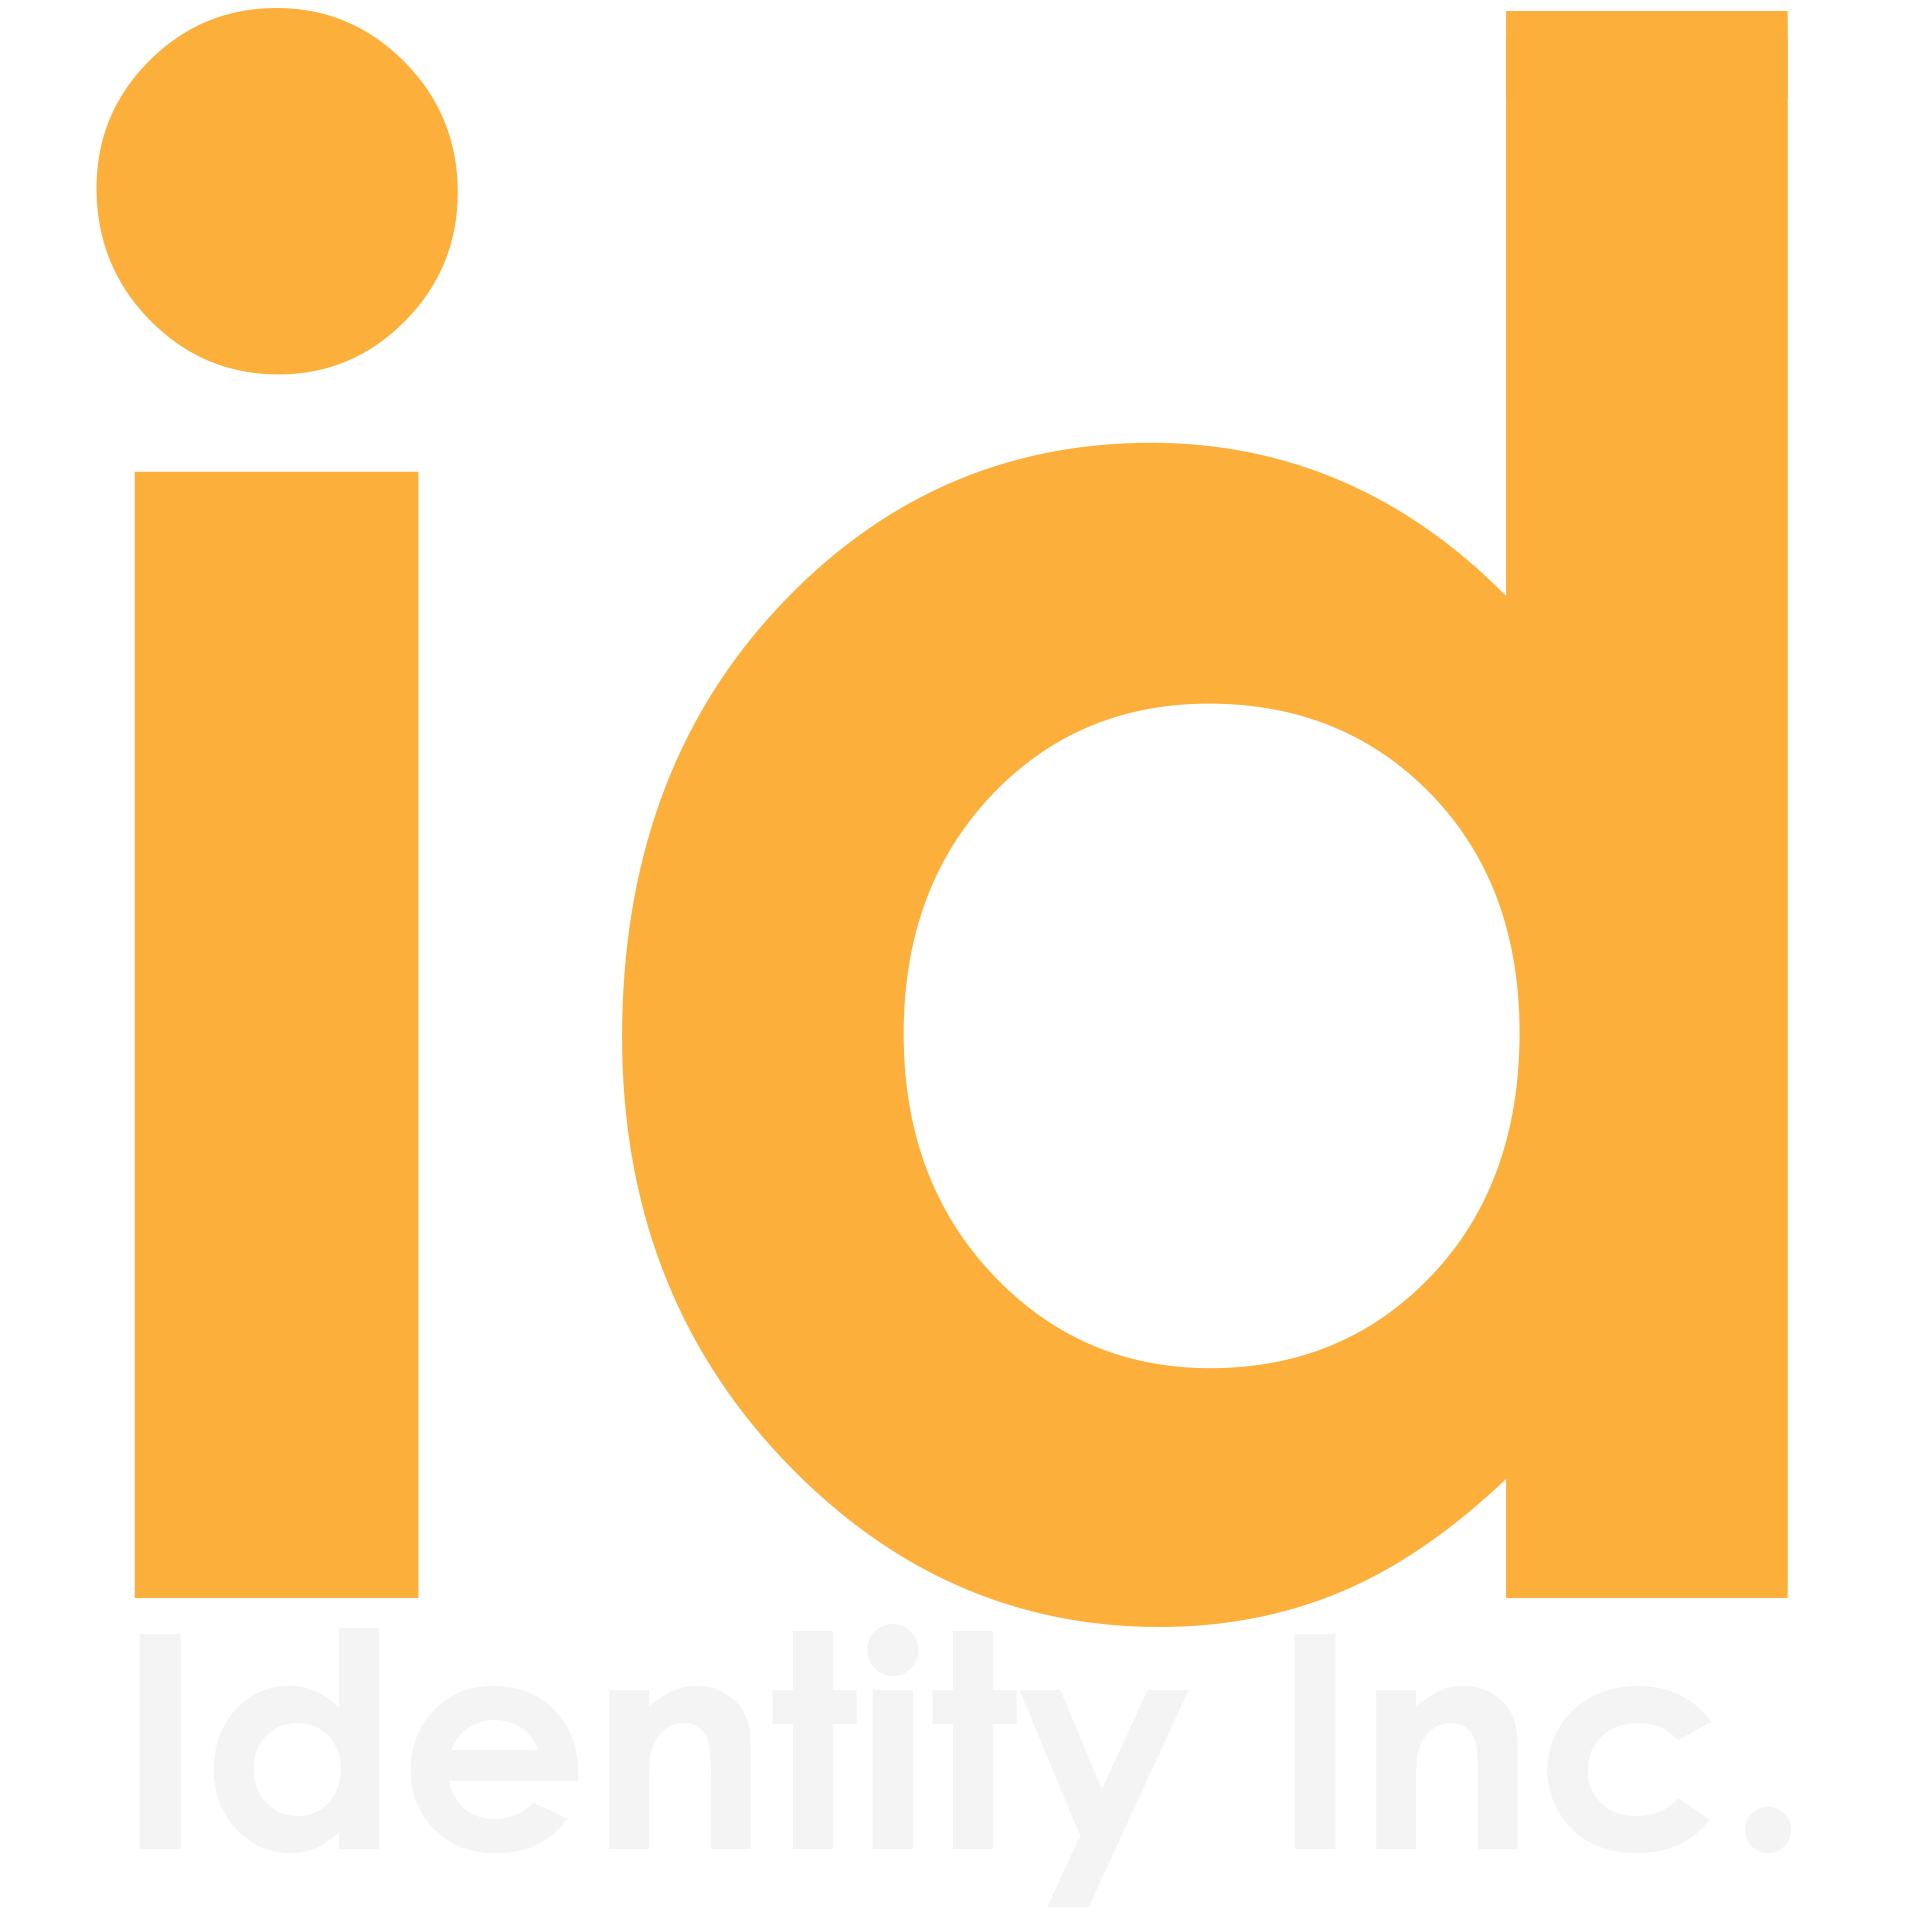 Identity Inc. Large logo